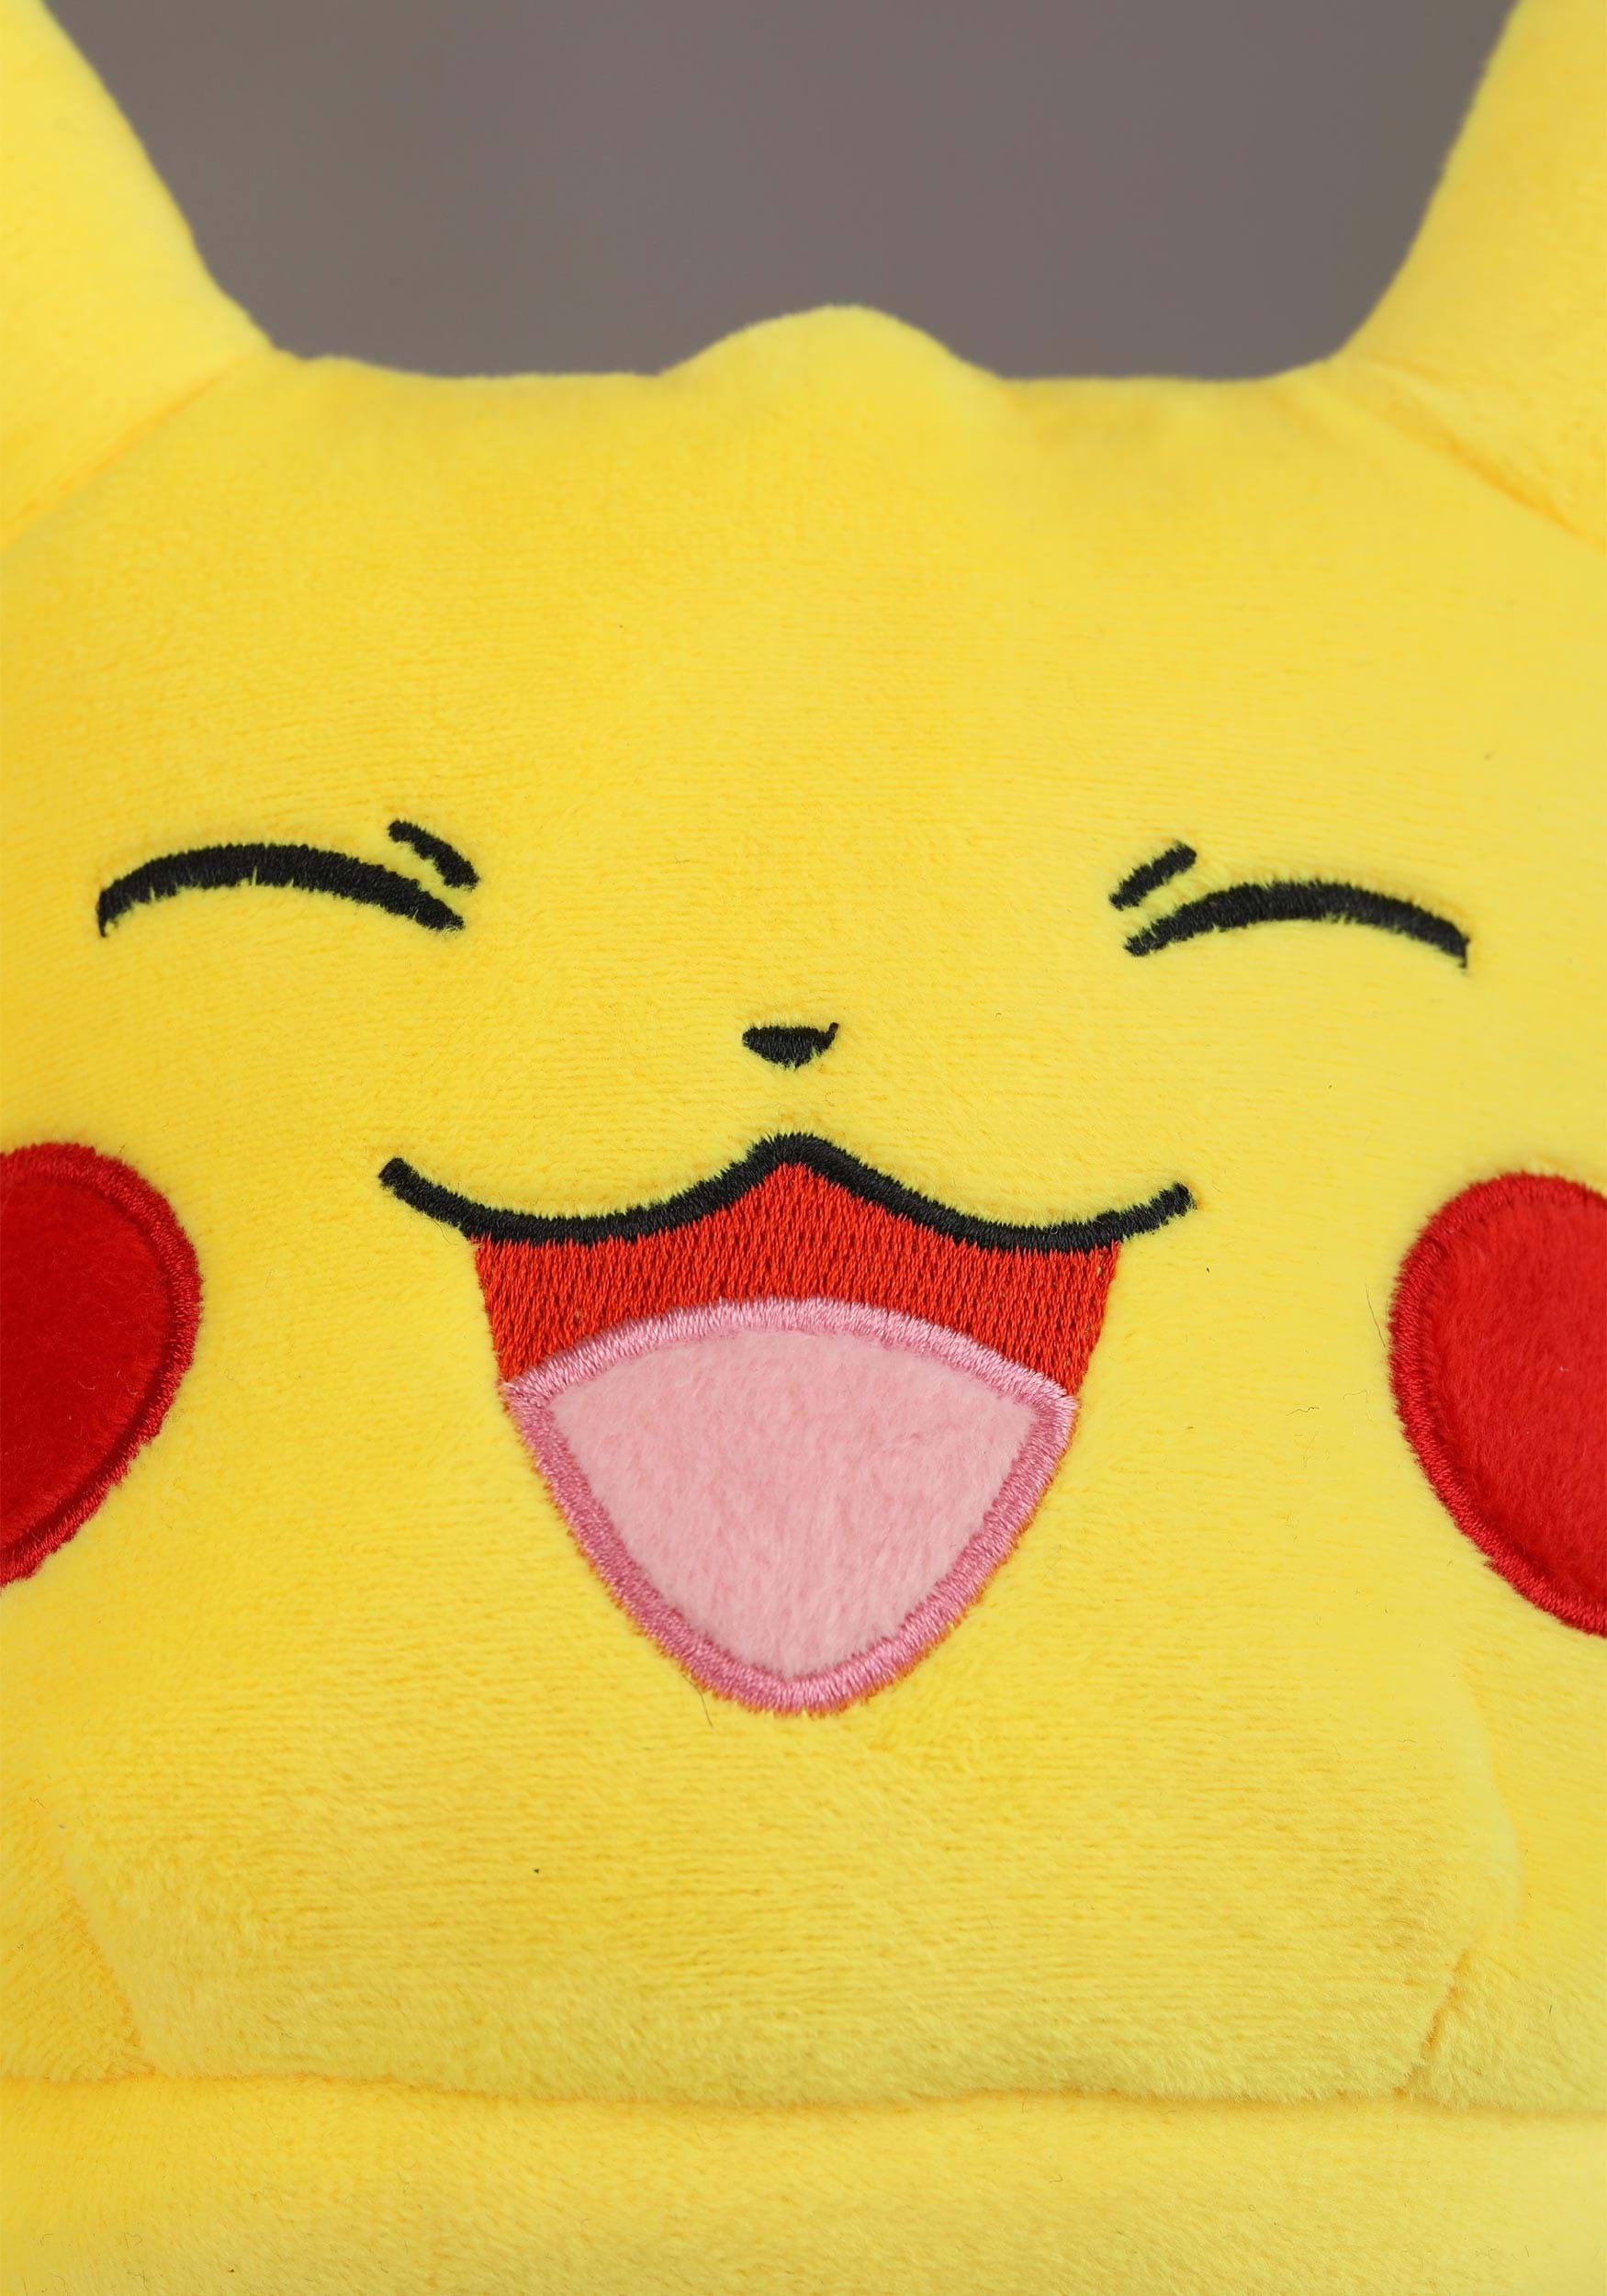 Adult Pokémon Pikachu Slipper , Pokémon Gifts